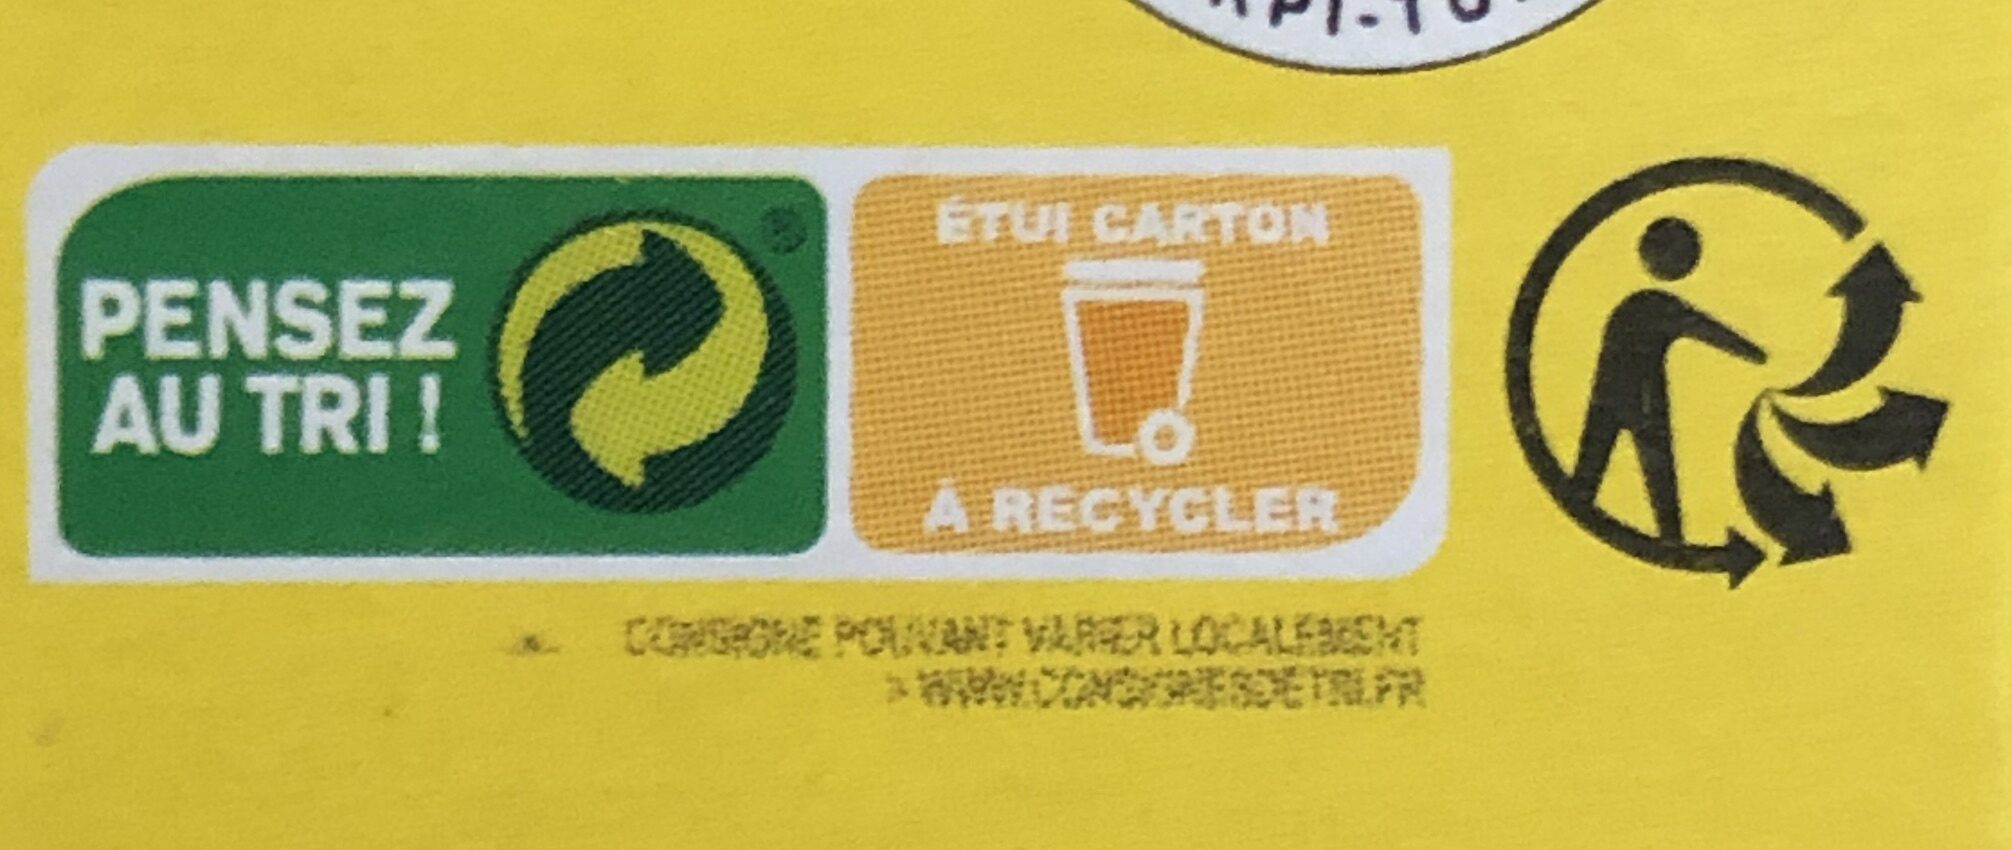 Harissa de la Tunisie - Instruction de recyclage et/ou informations d'emballage